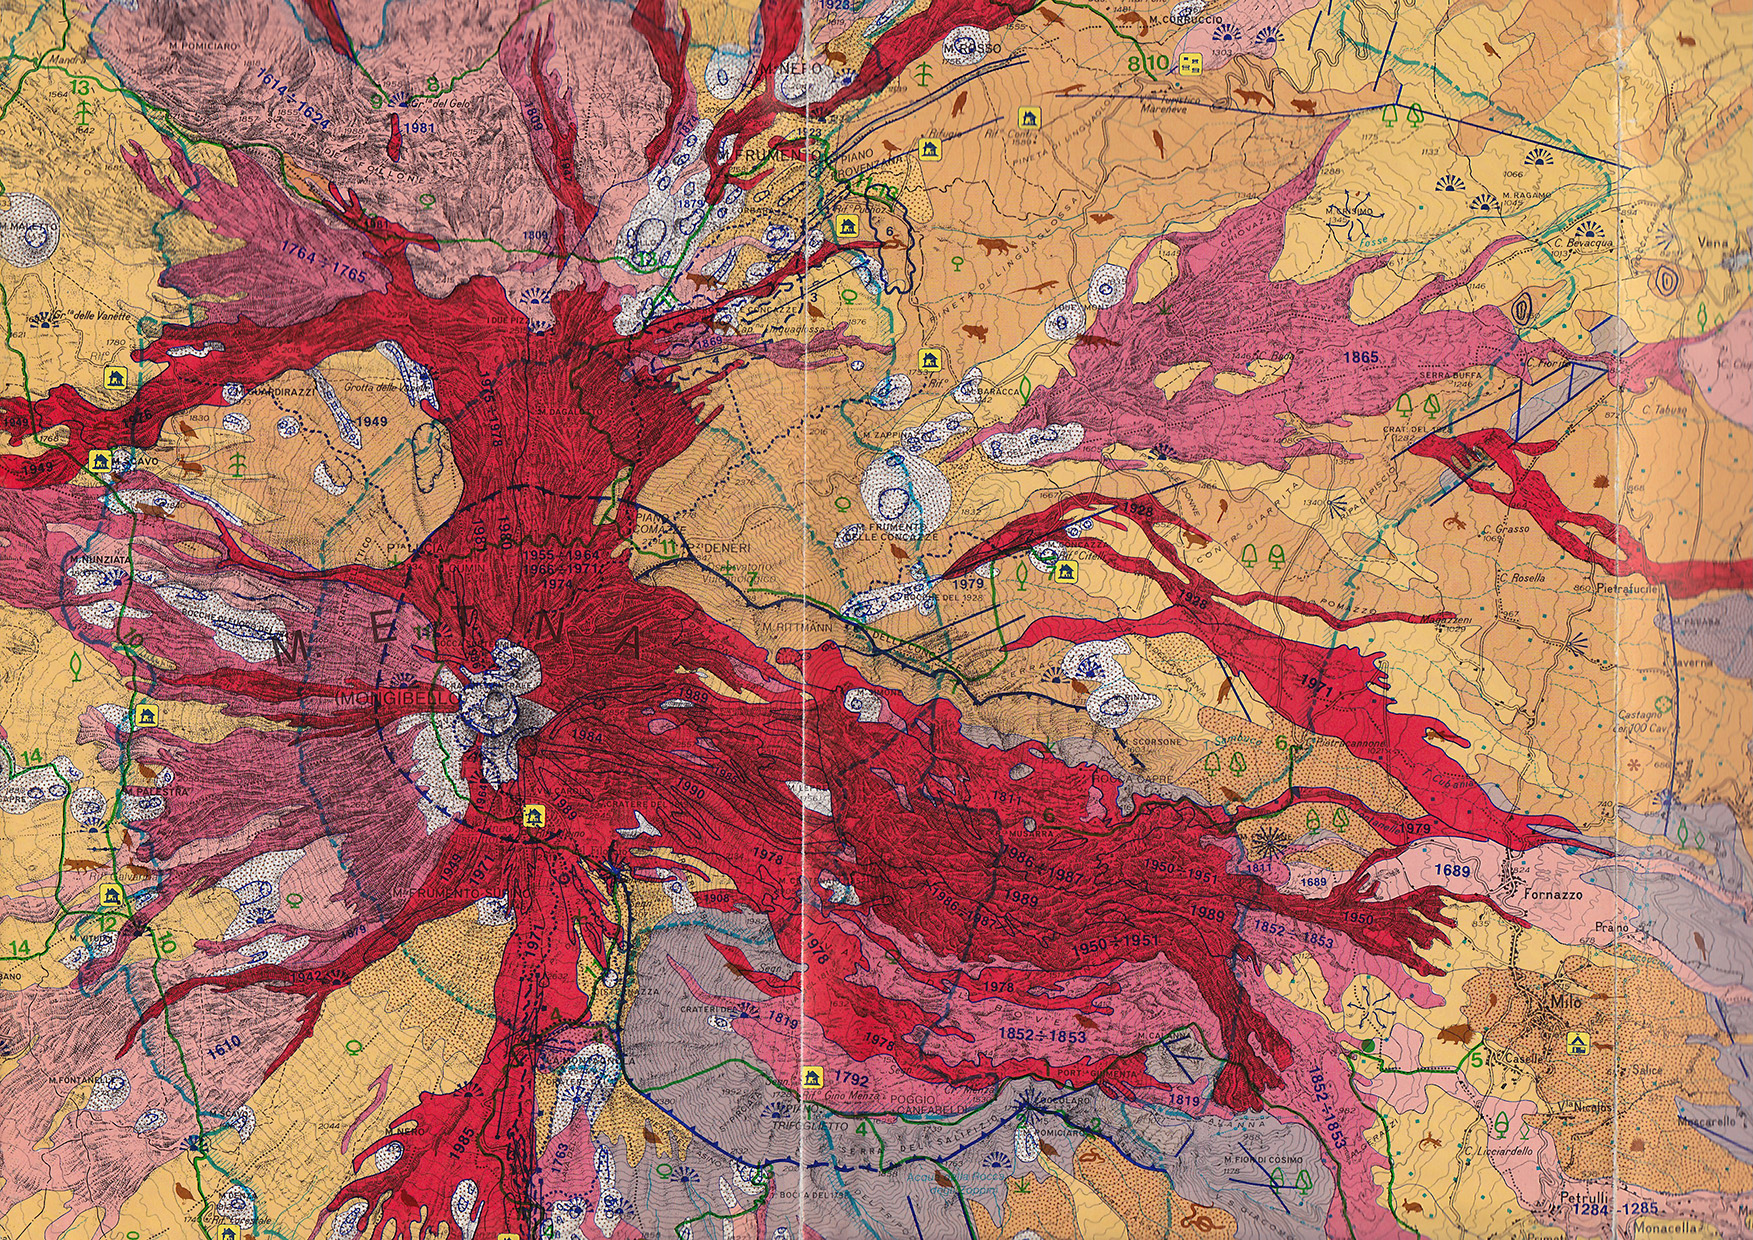 Részlet az Etna geológiai térképéről (S.E.L.C.A. Firenze)